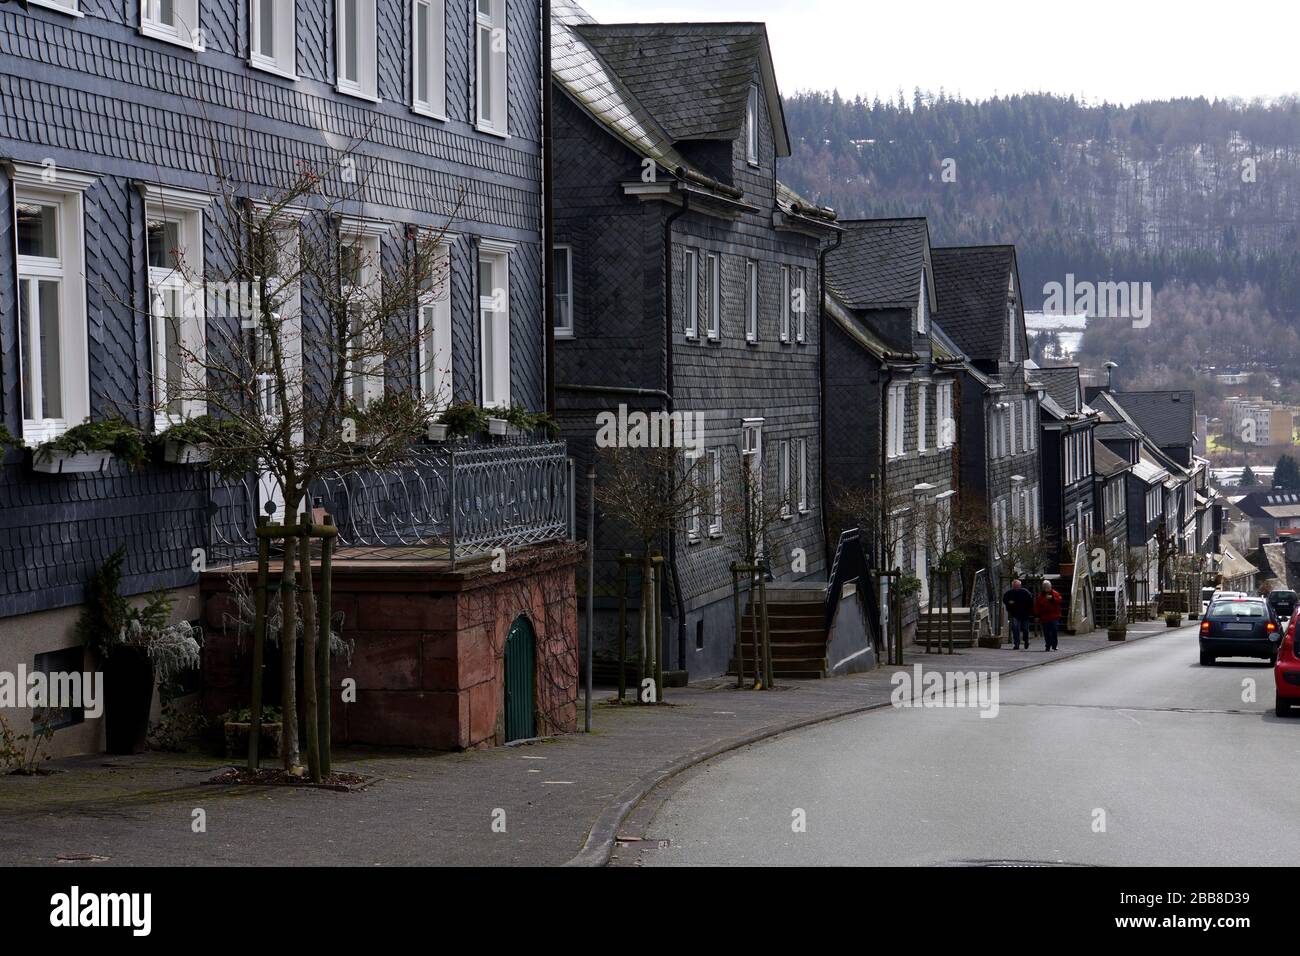 typische Wohnhäuser mit Schiefer-Verkleidung, Bad Berleburg, Nordrhein-Westfalen, Deutschland Stock Photo